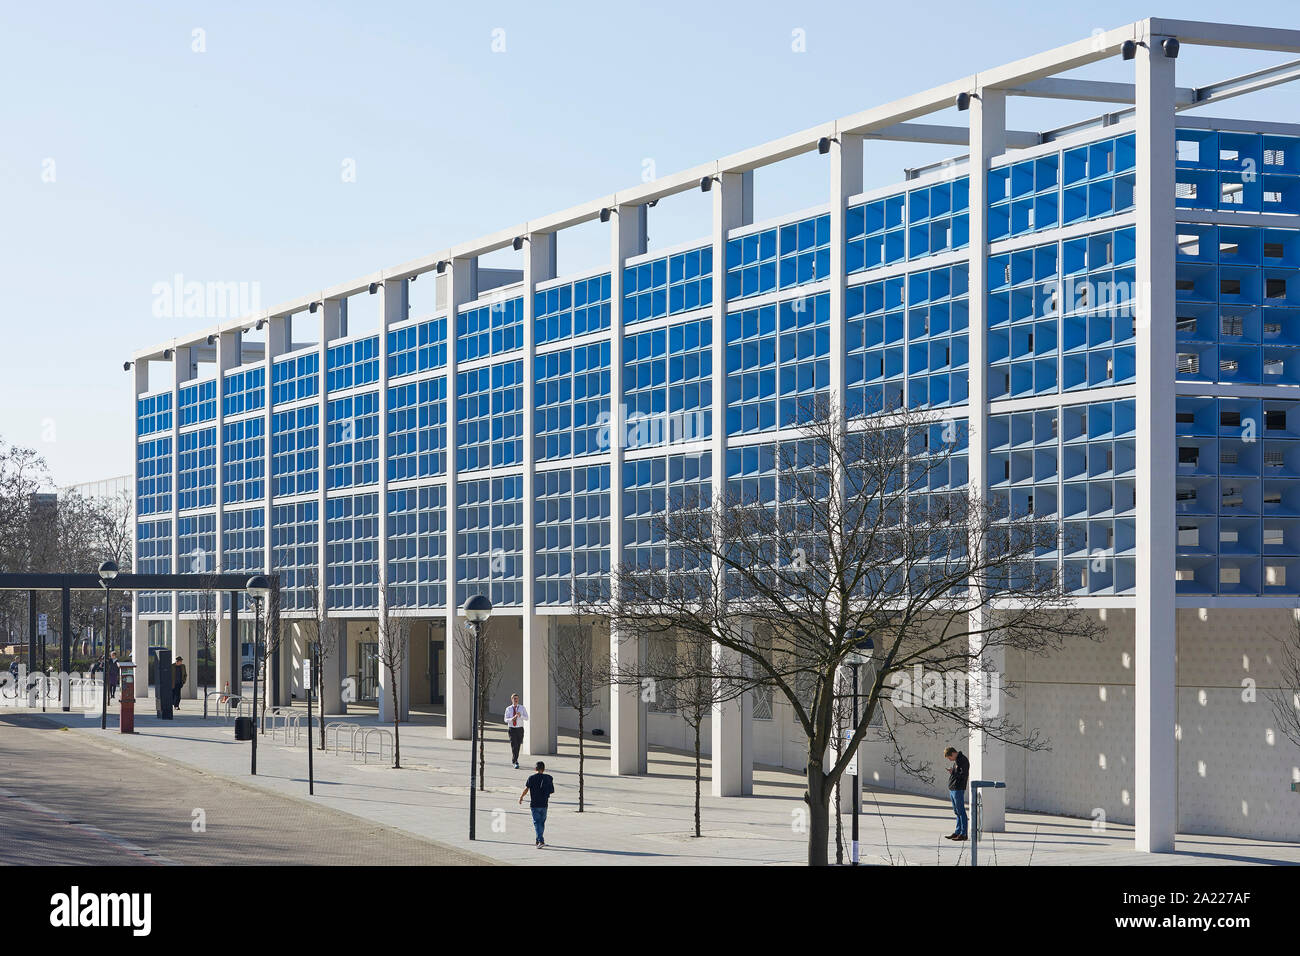 Perspective along car park building. Centre MK, Milton Keynes, United Kingdom. Architect: Leslie Jones Architecture, 2019. Stock Photo